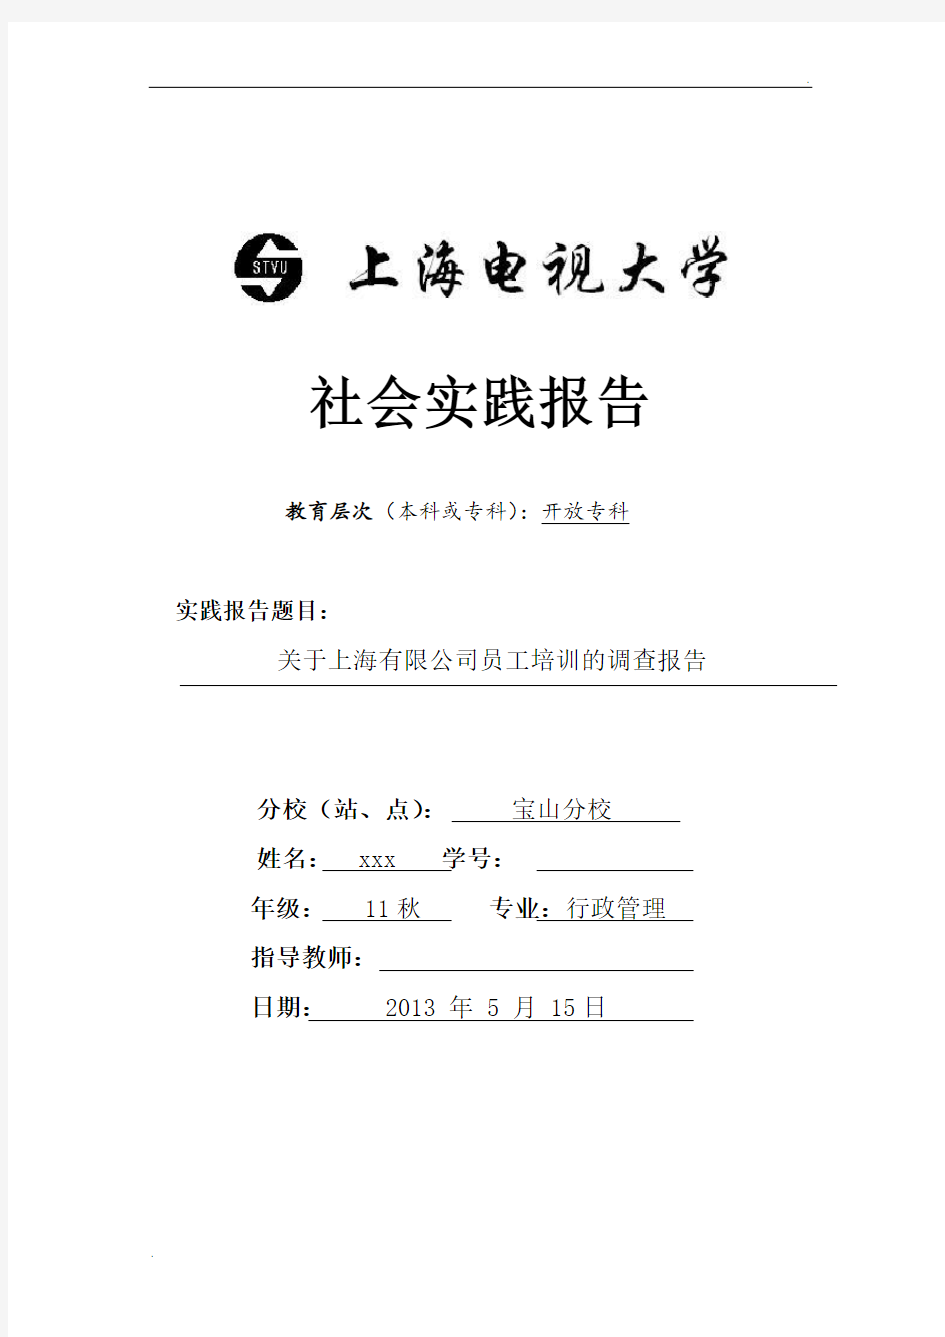 关于上海有限公司员工培训调查报告